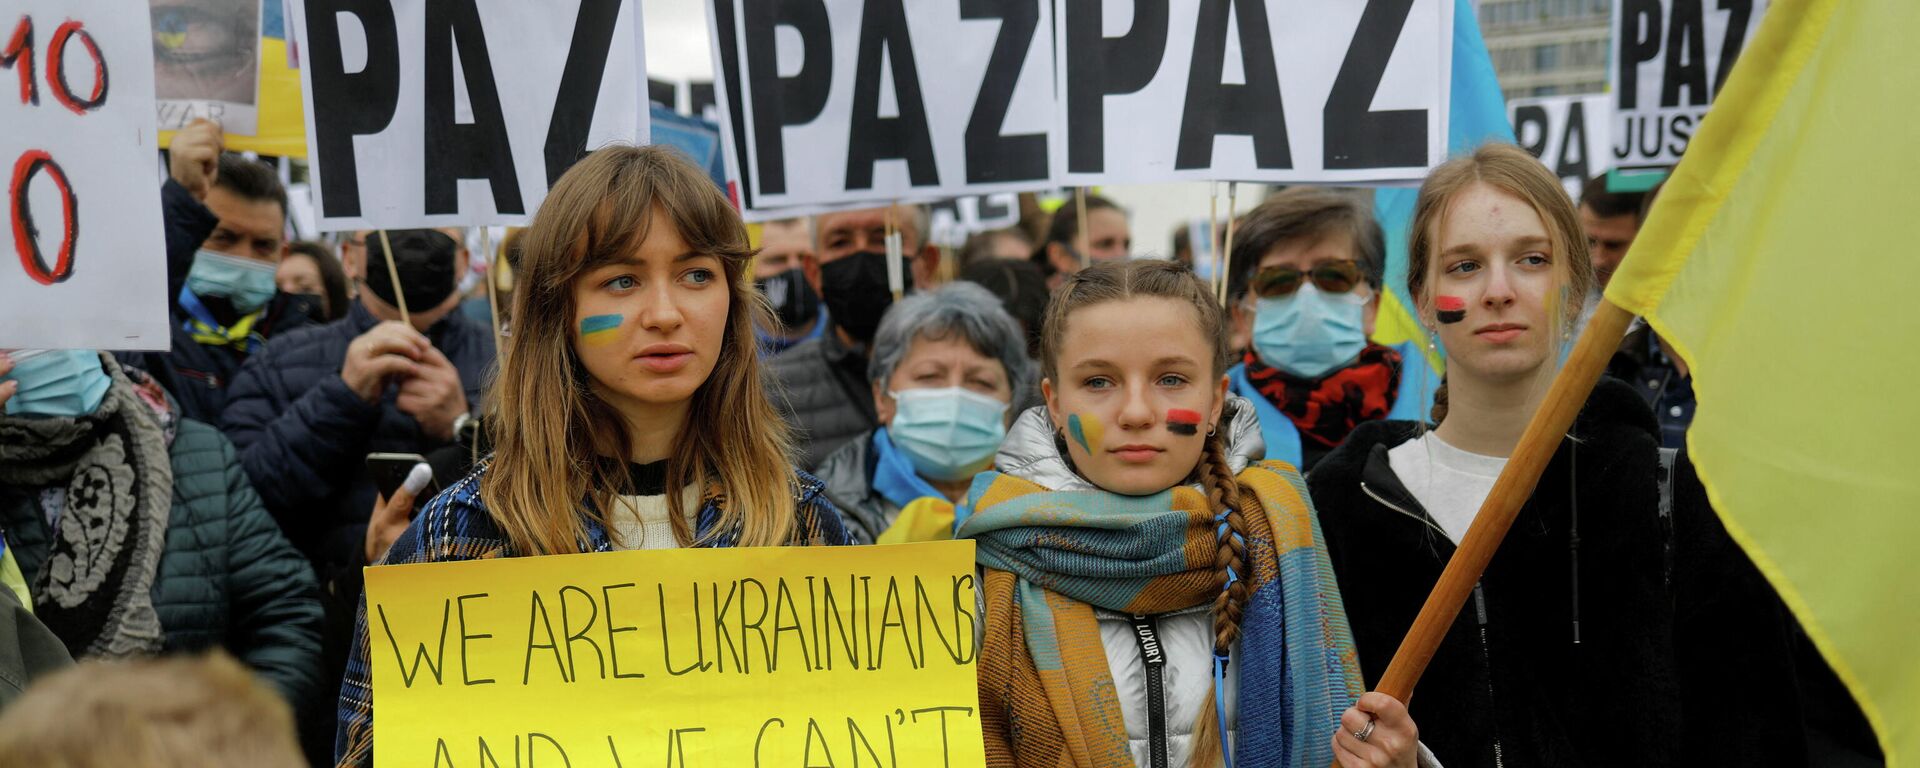 Una manifestación en apoyo a Ucrania en Madrid, el 27 de febrero de 2022 - Sputnik Mundo, 1920, 27.02.2022